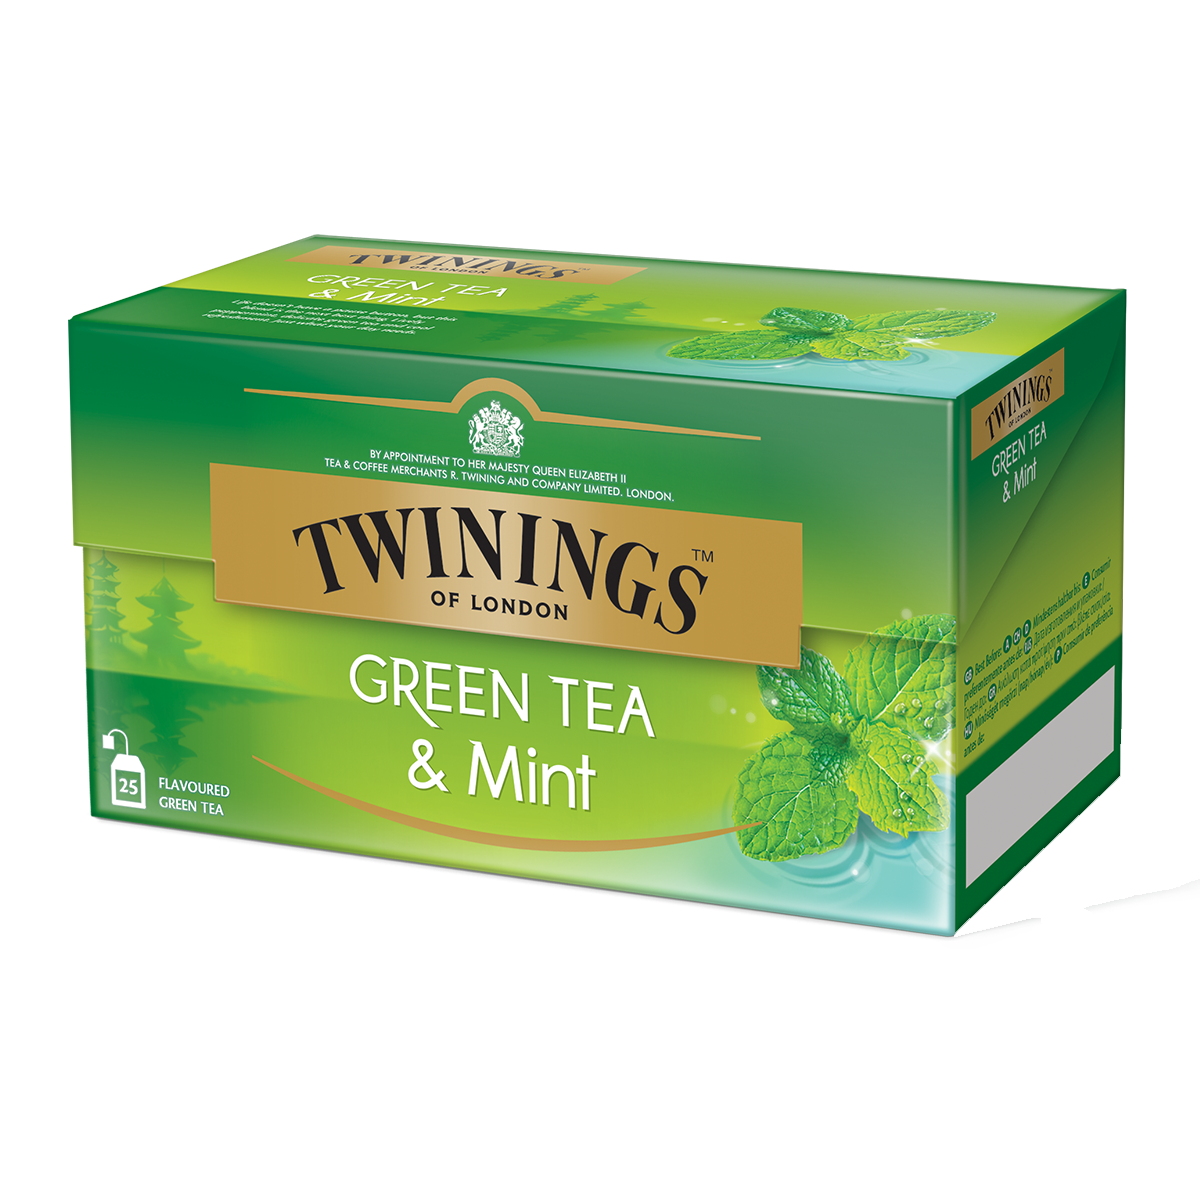  Green Tea & Mint - der würzigste Grüntee